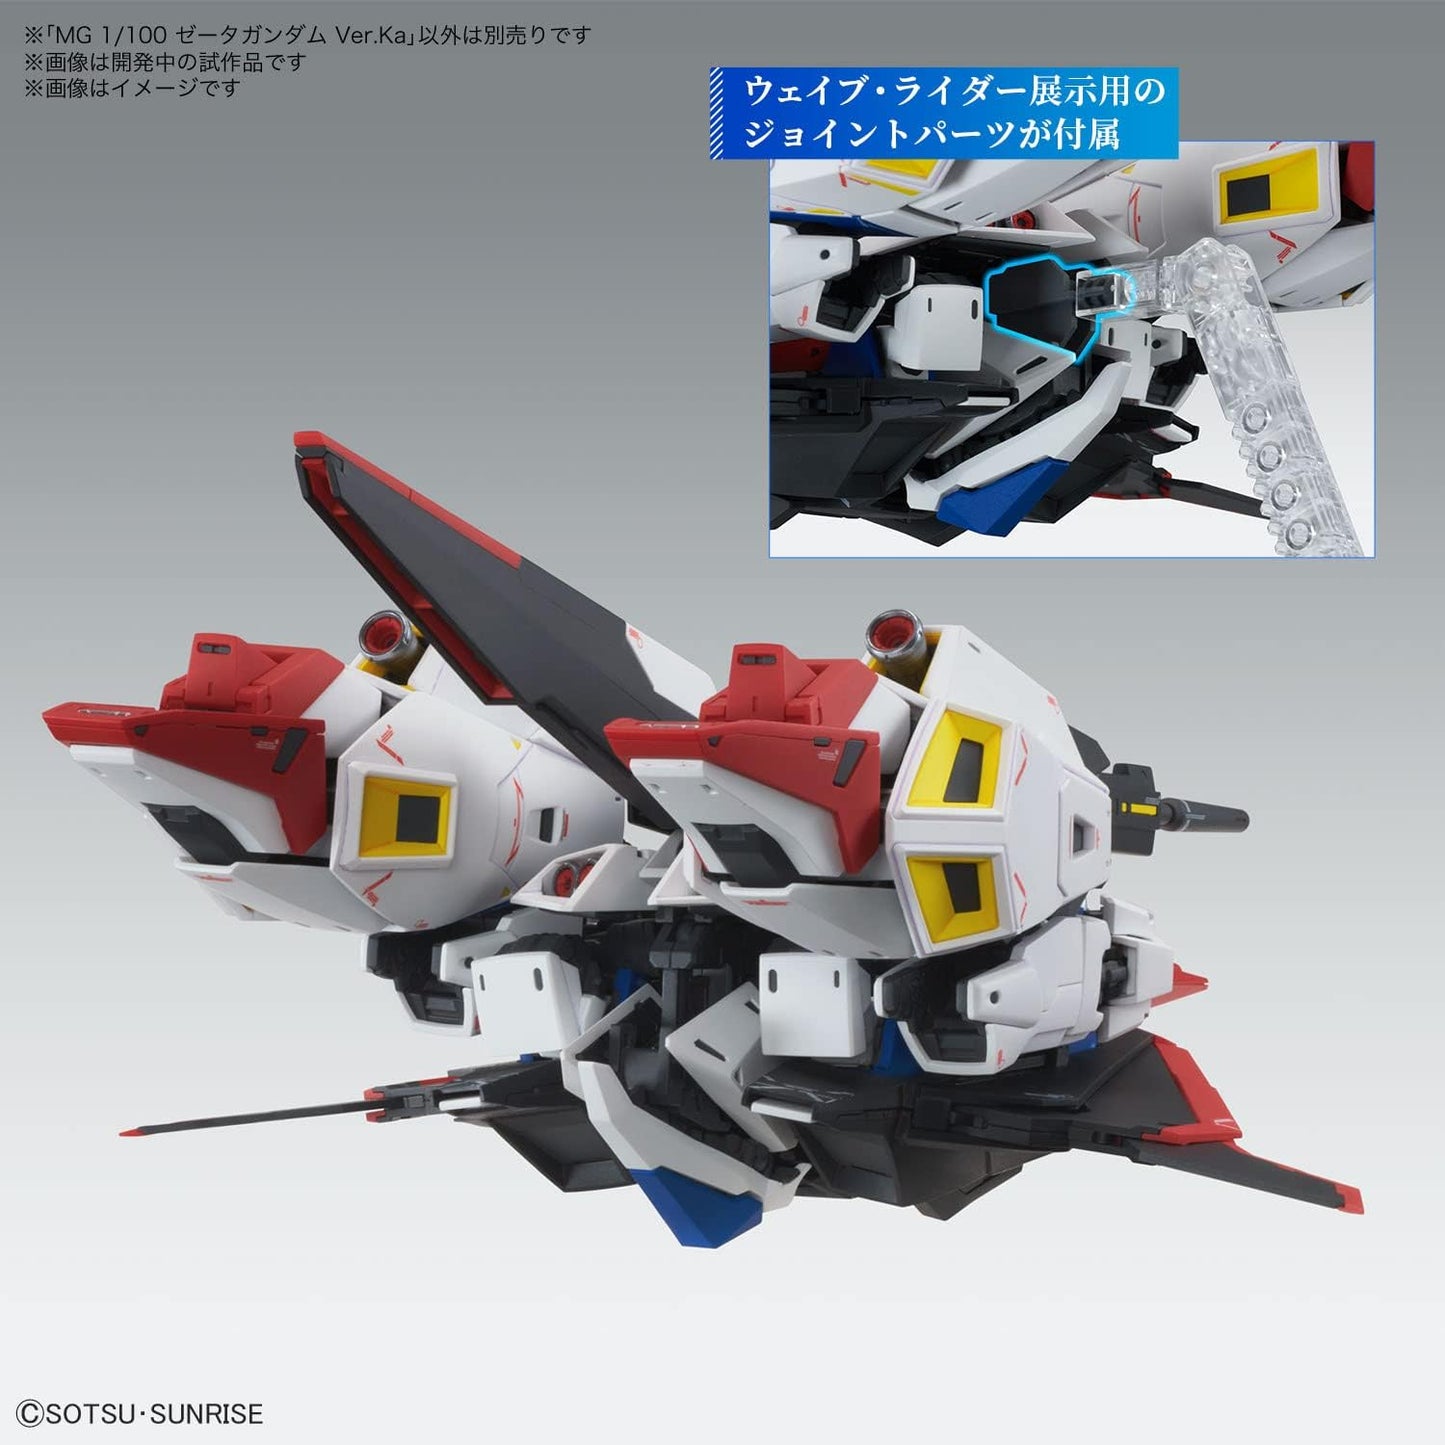 MG Zeta Gundam (Ver.Ka)